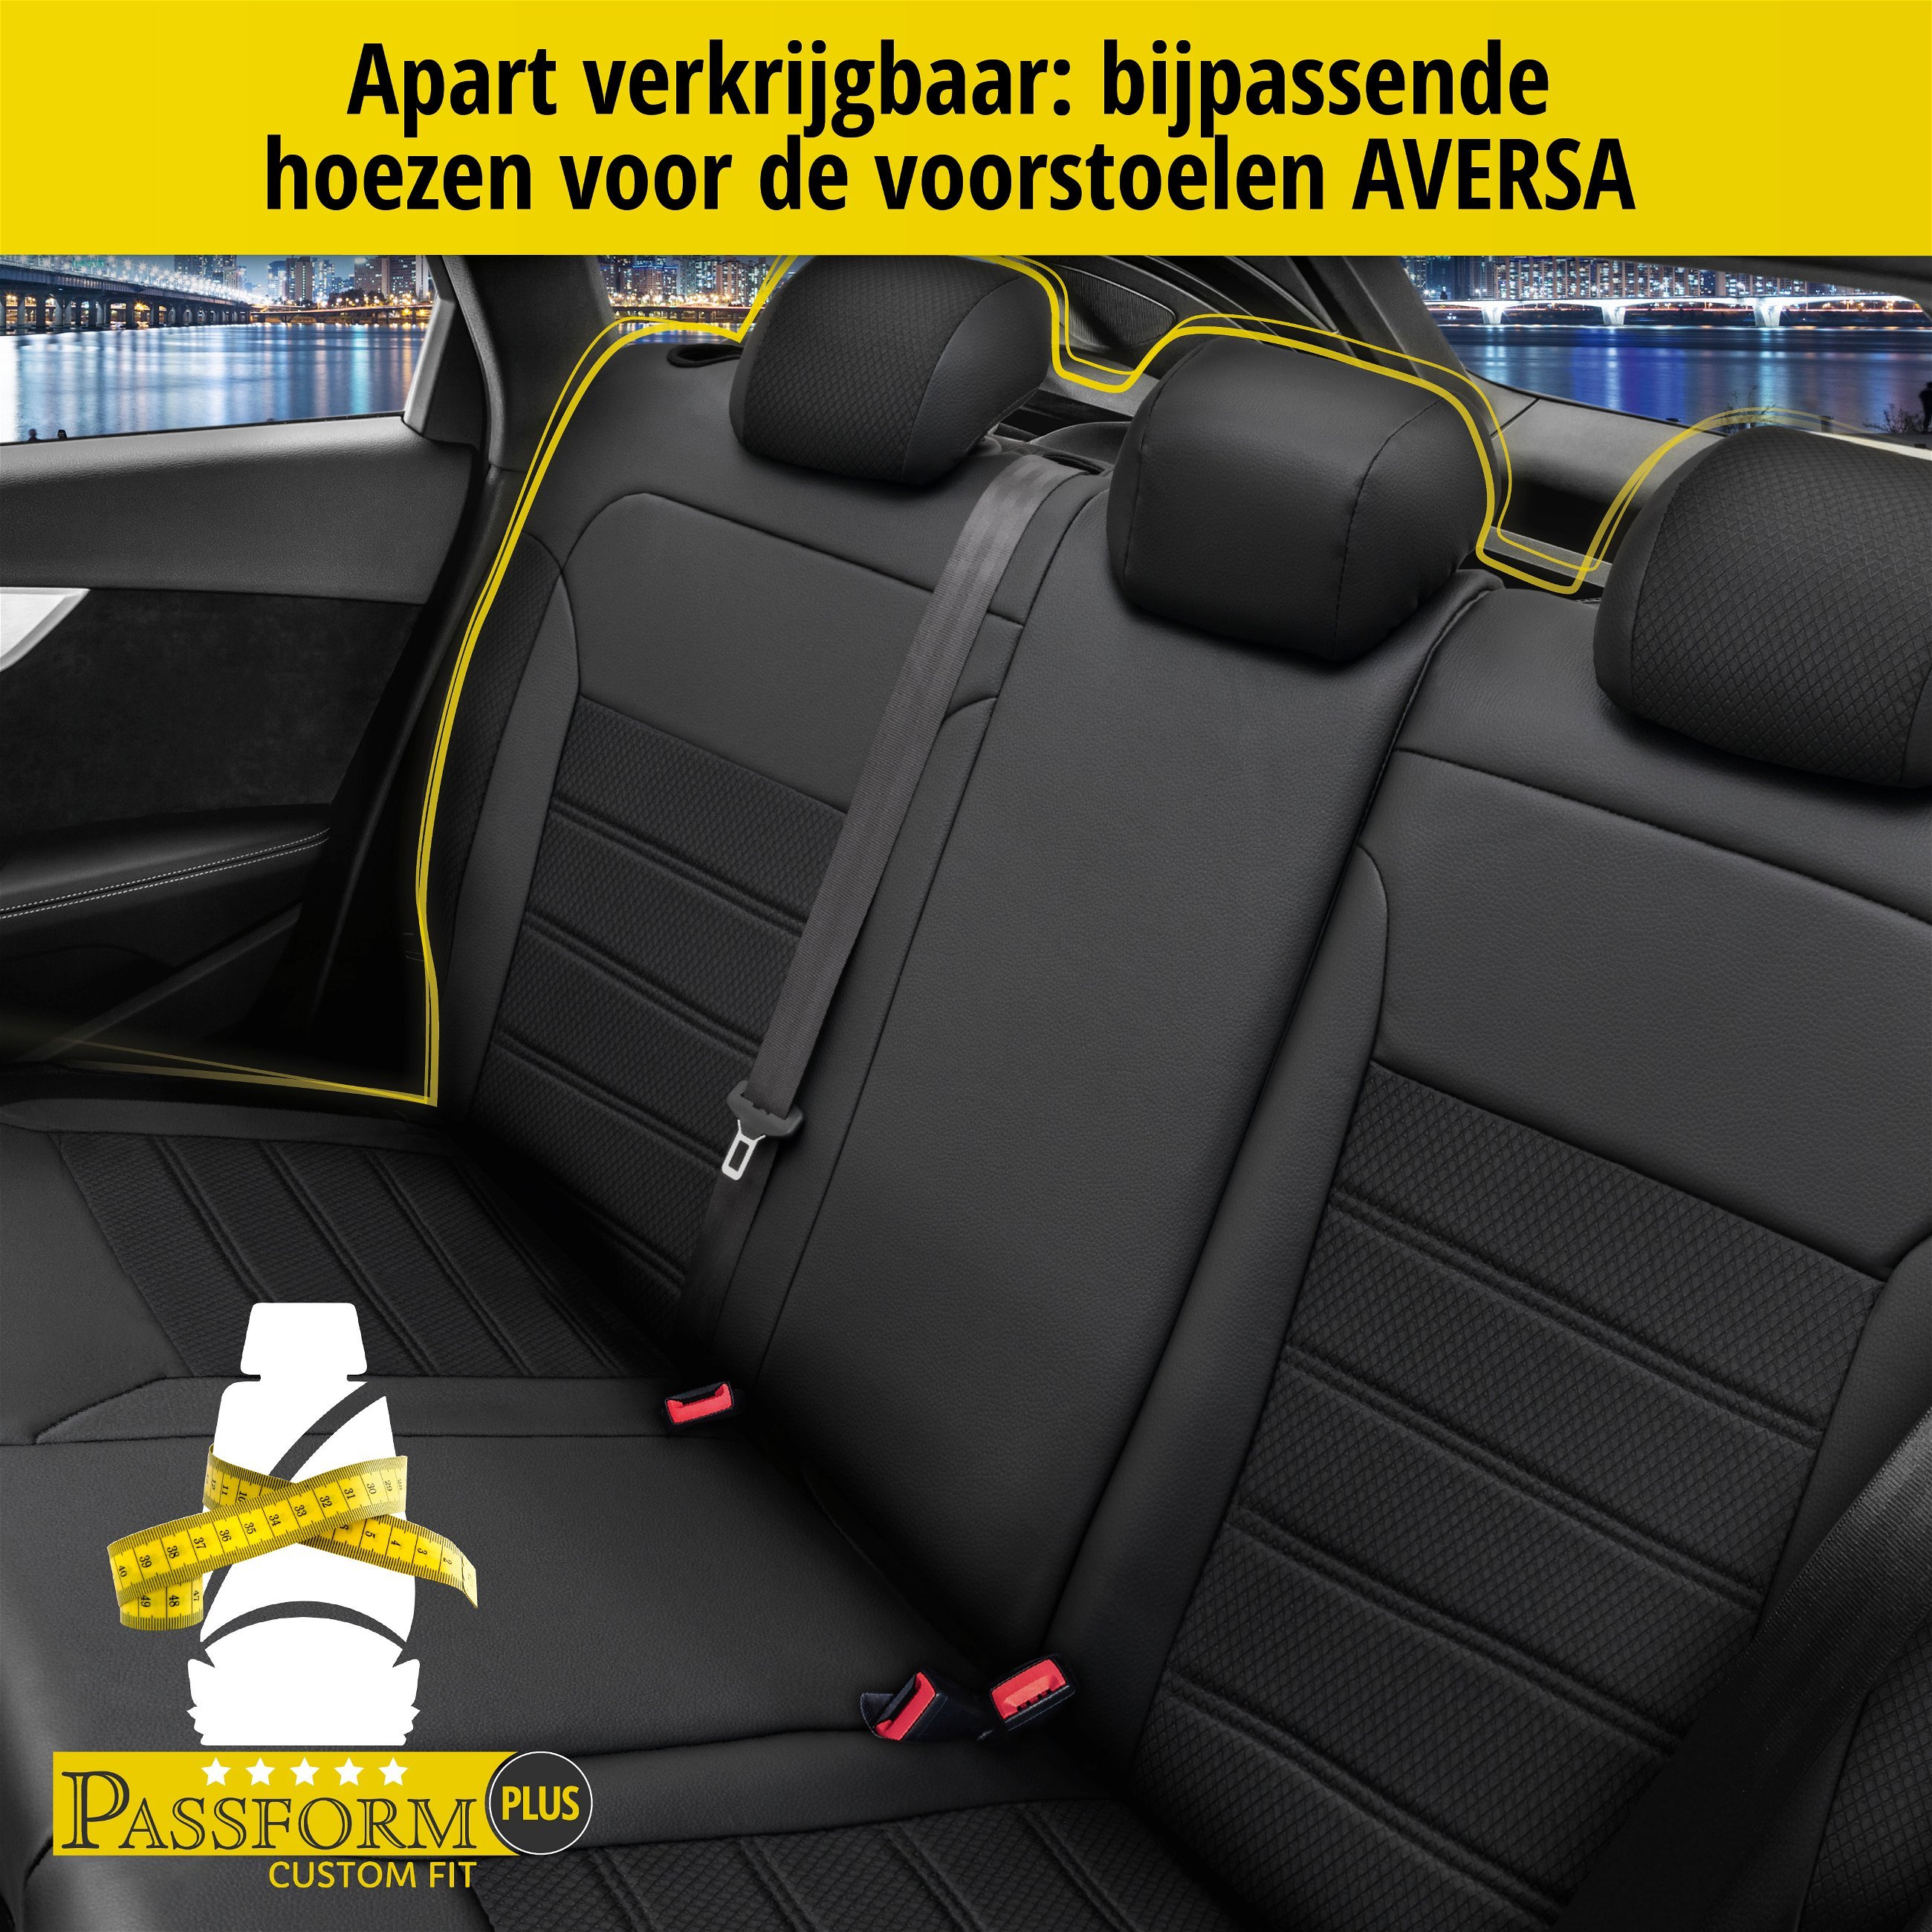 Auto stoelbekleding Aversa geschikt voor VW Golf VII Comfortline 08/2012-03/2021, 2 enkele zetelhoezen voor standard zetels